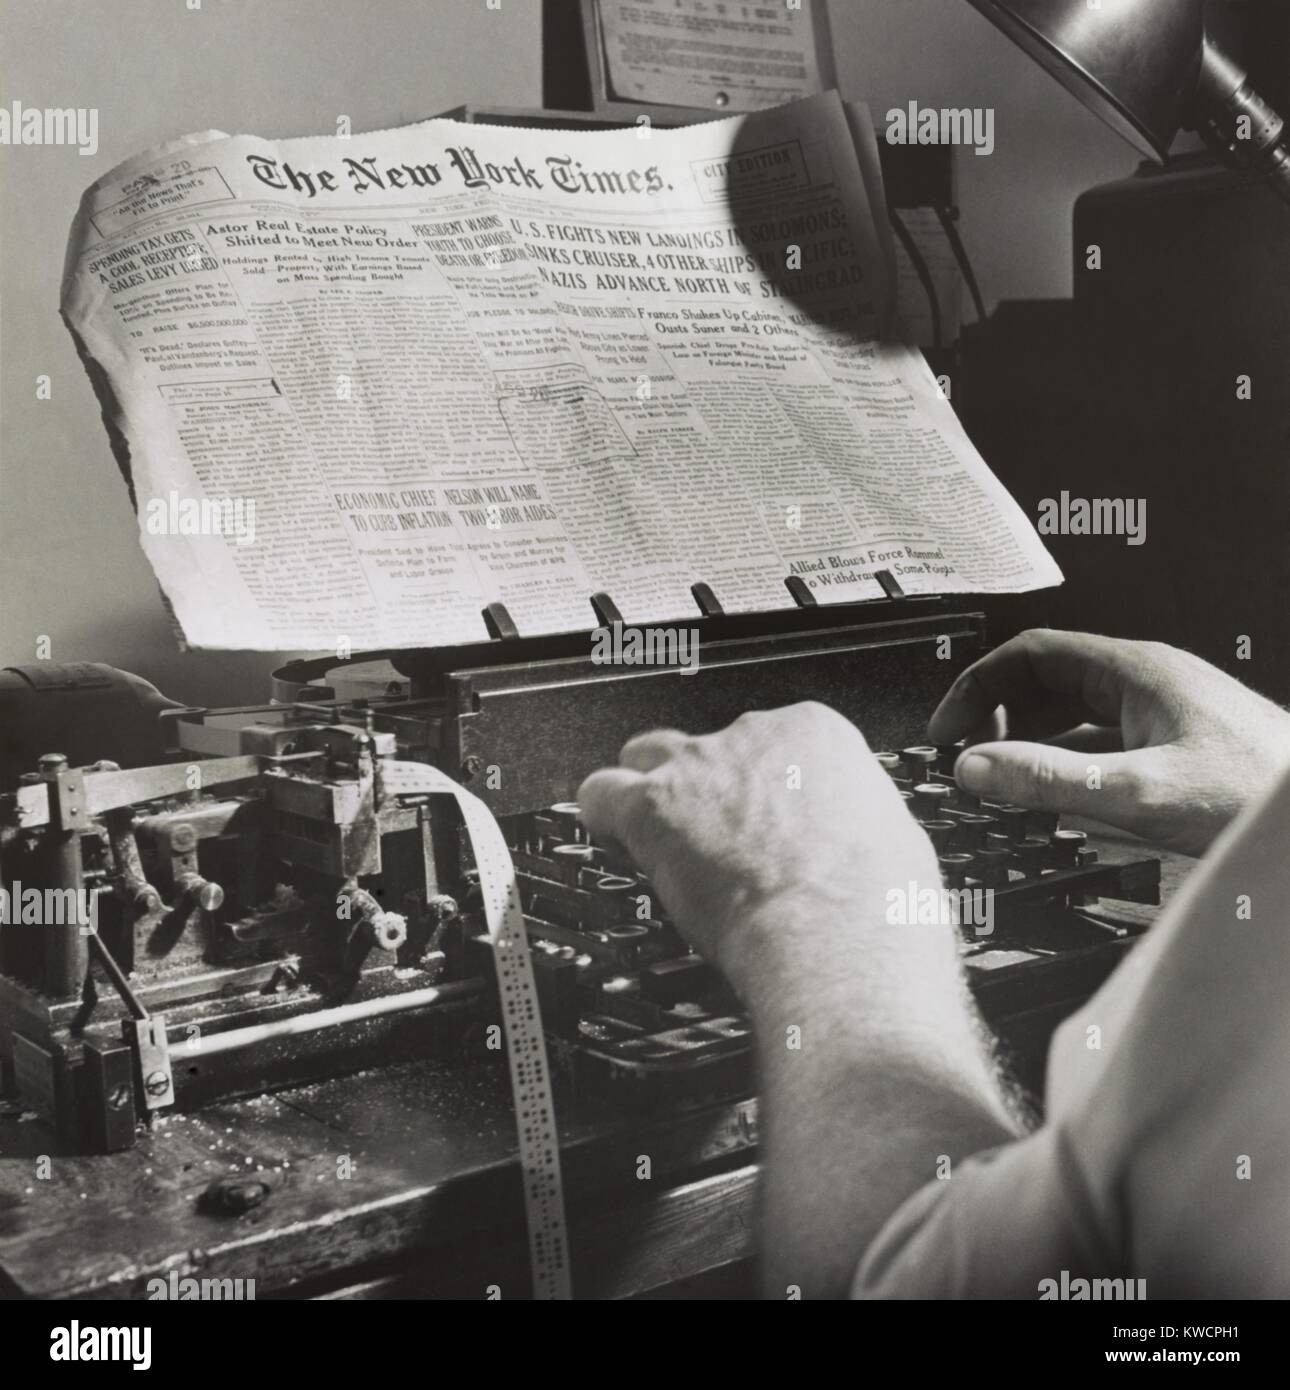 La salle radio du New York Times, 1942. sept. Fois war news adopté par la censure de la marine a été indiqué par stamps sur papier. Puis l'actualité a été envoyé deux fois par jour par le Times' propre émetteur radio à ondes courtes dans le code Morse international. - BSLOC  2015 (1 187) Banque D'Images